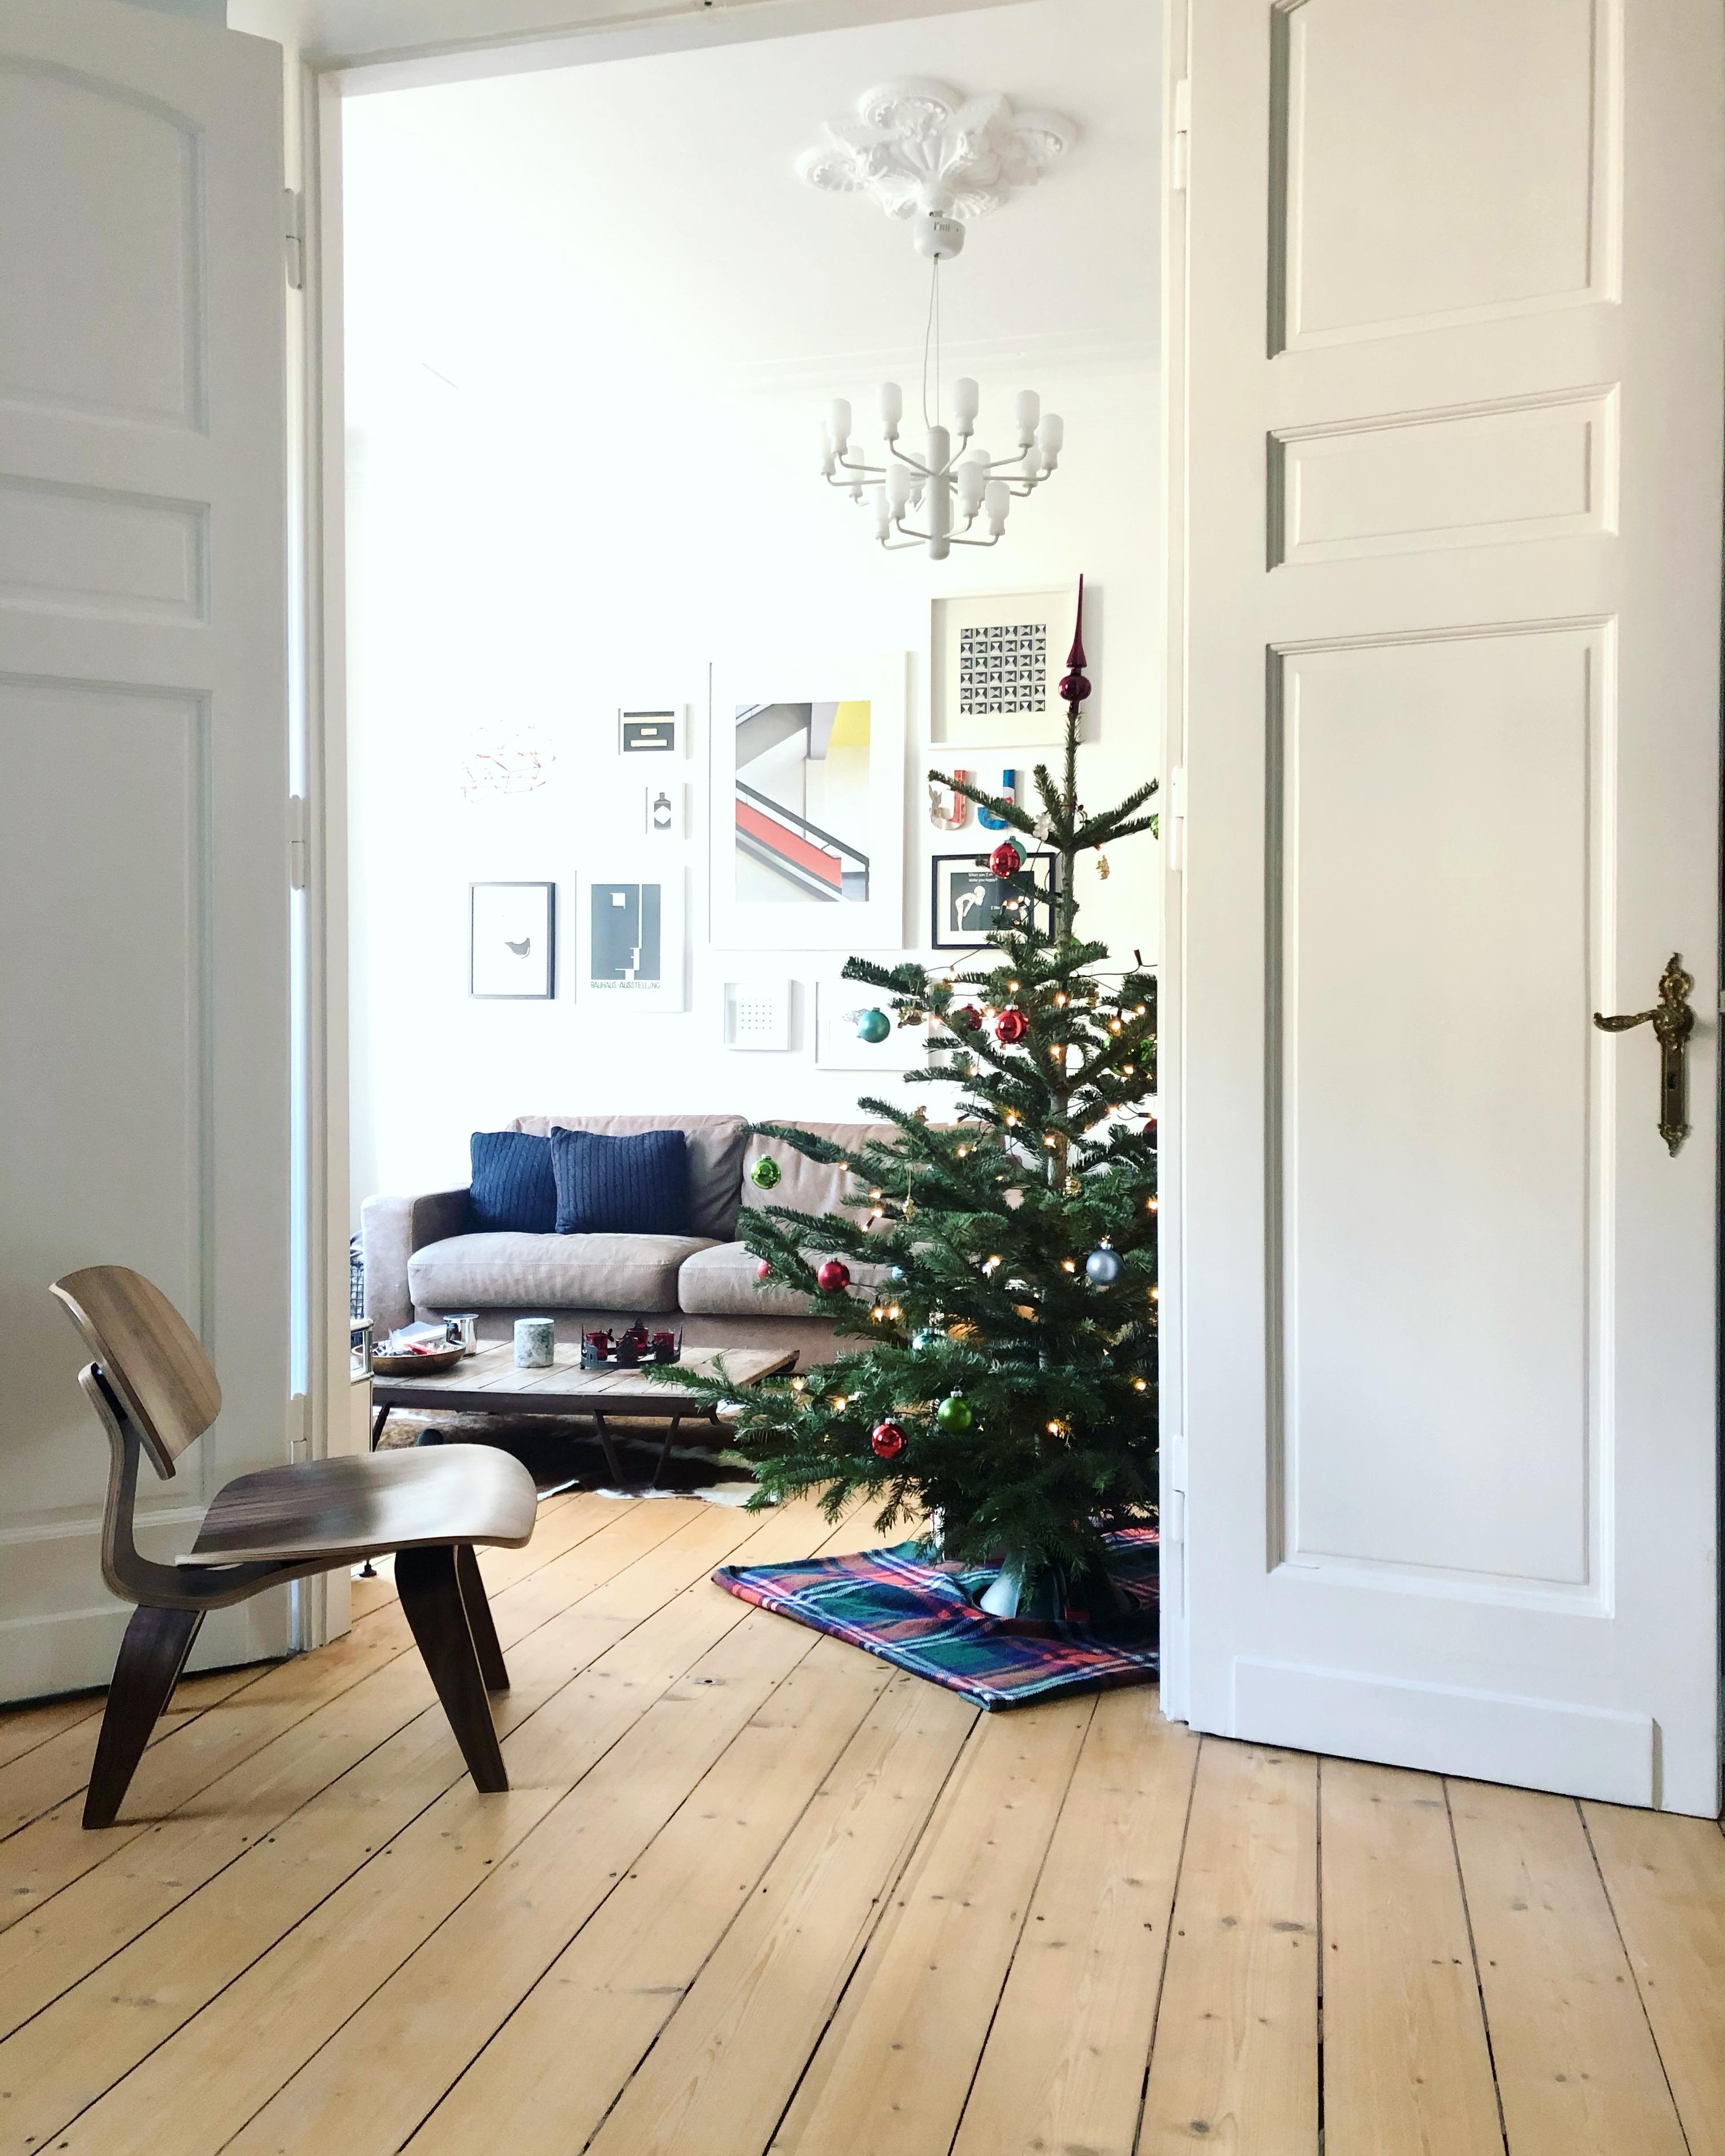 Alle Jahre wieder... Anders als die letzten Jahre, aber der #xmas spirit ist da 🤗 #weihnachtsbaum #altbau #wohnzimmer 